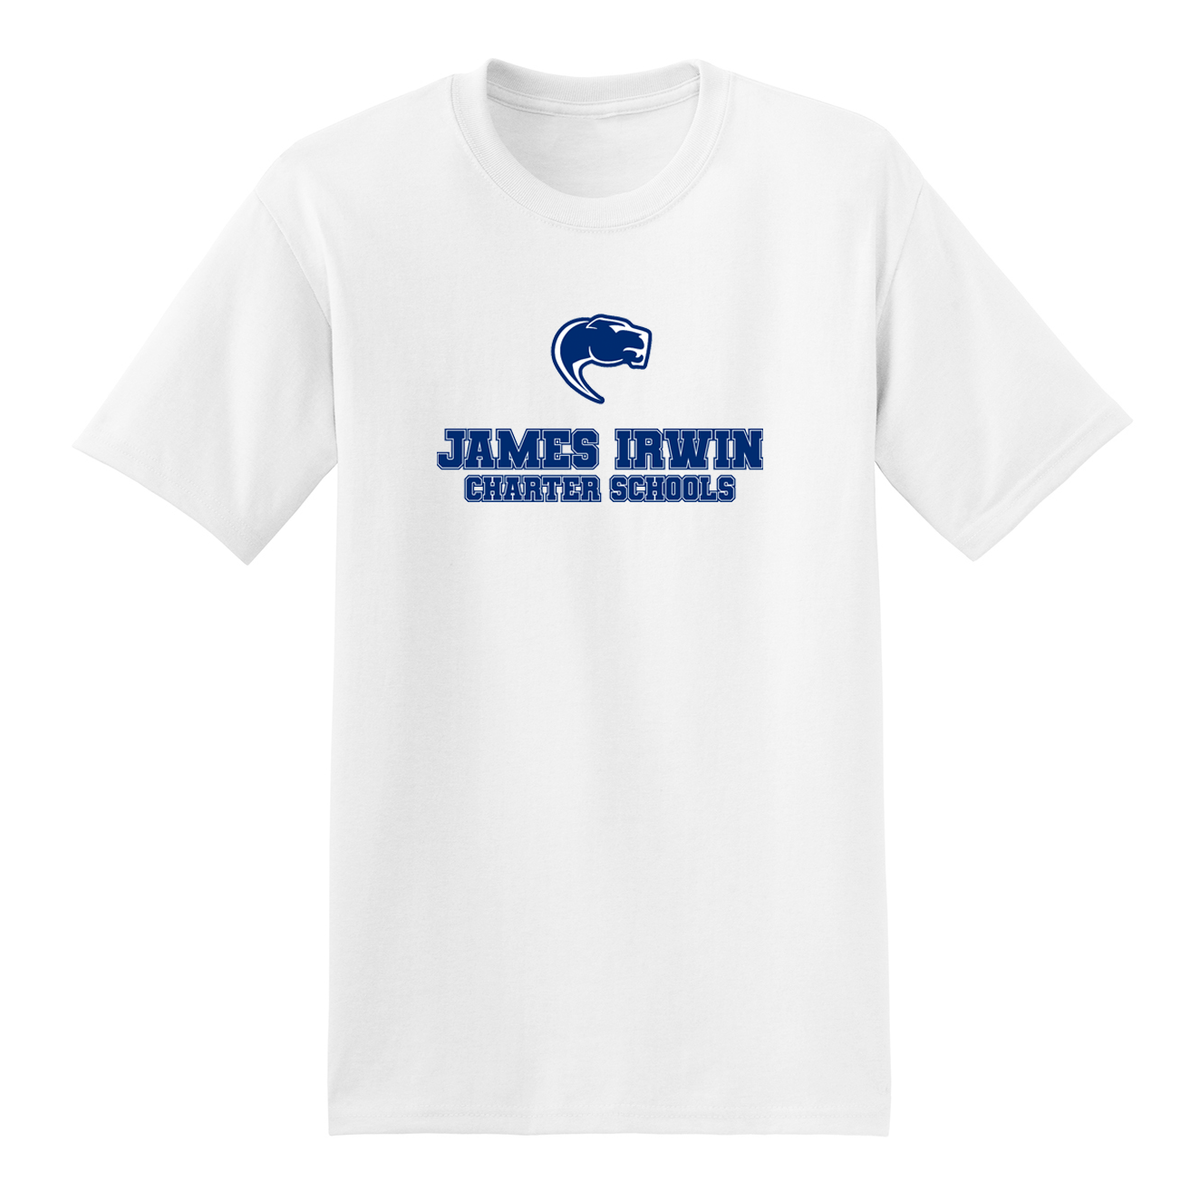 James Irwin Charter Schools T-Shirt